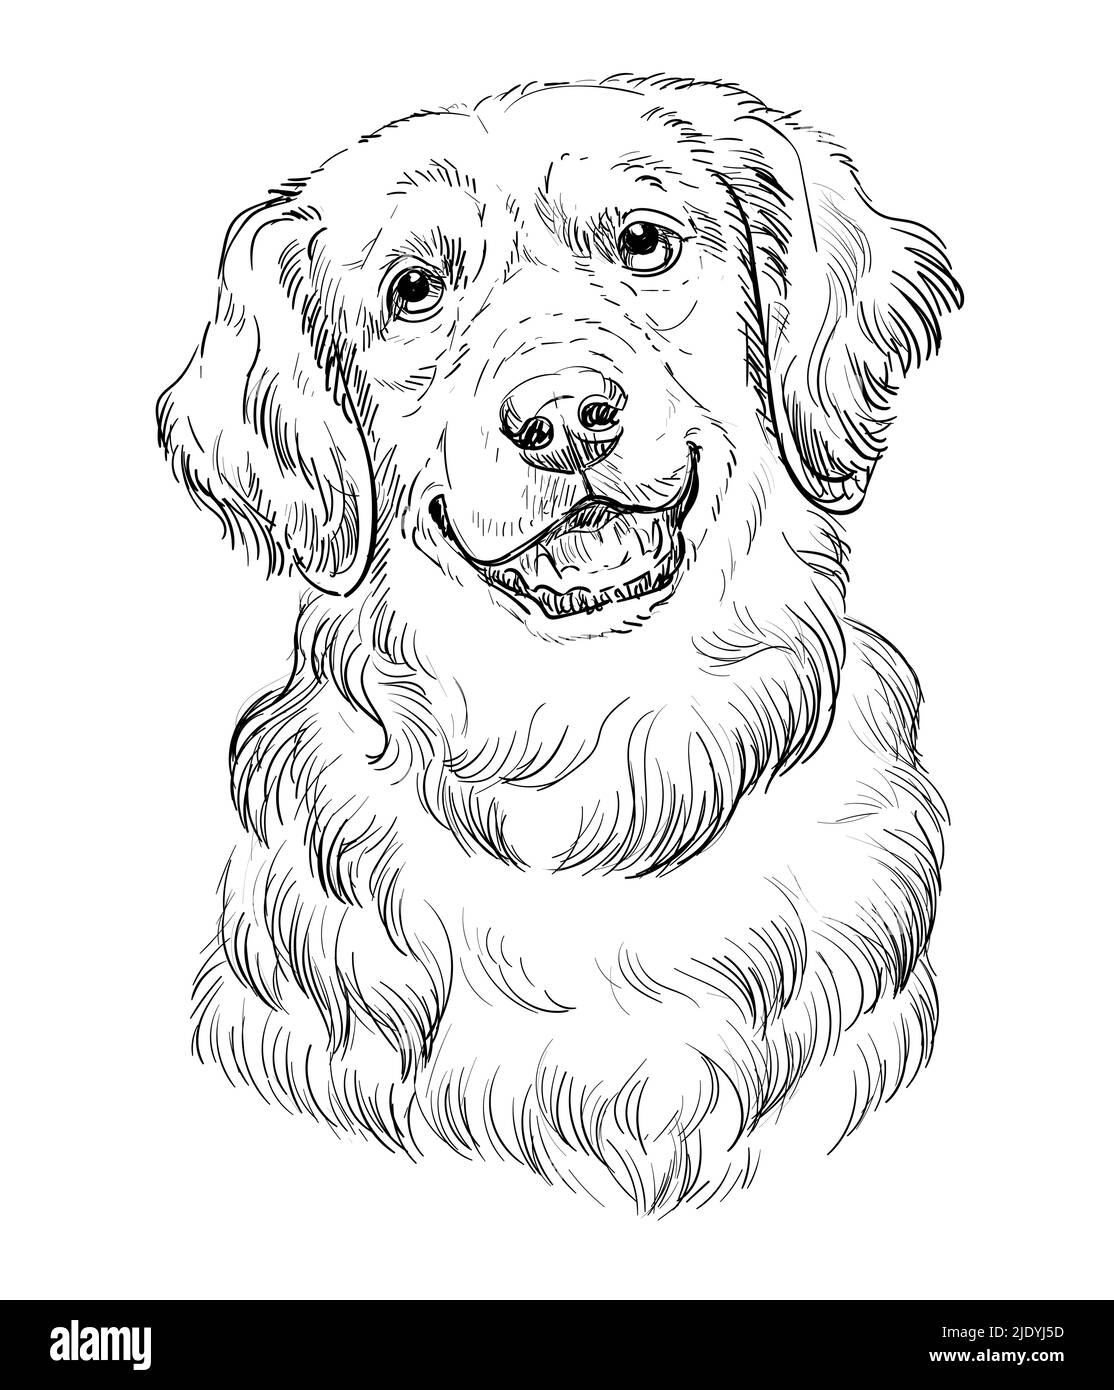 Dibujo de perro Imágenes de stock en blanco y negro - Página 2 - Alamy